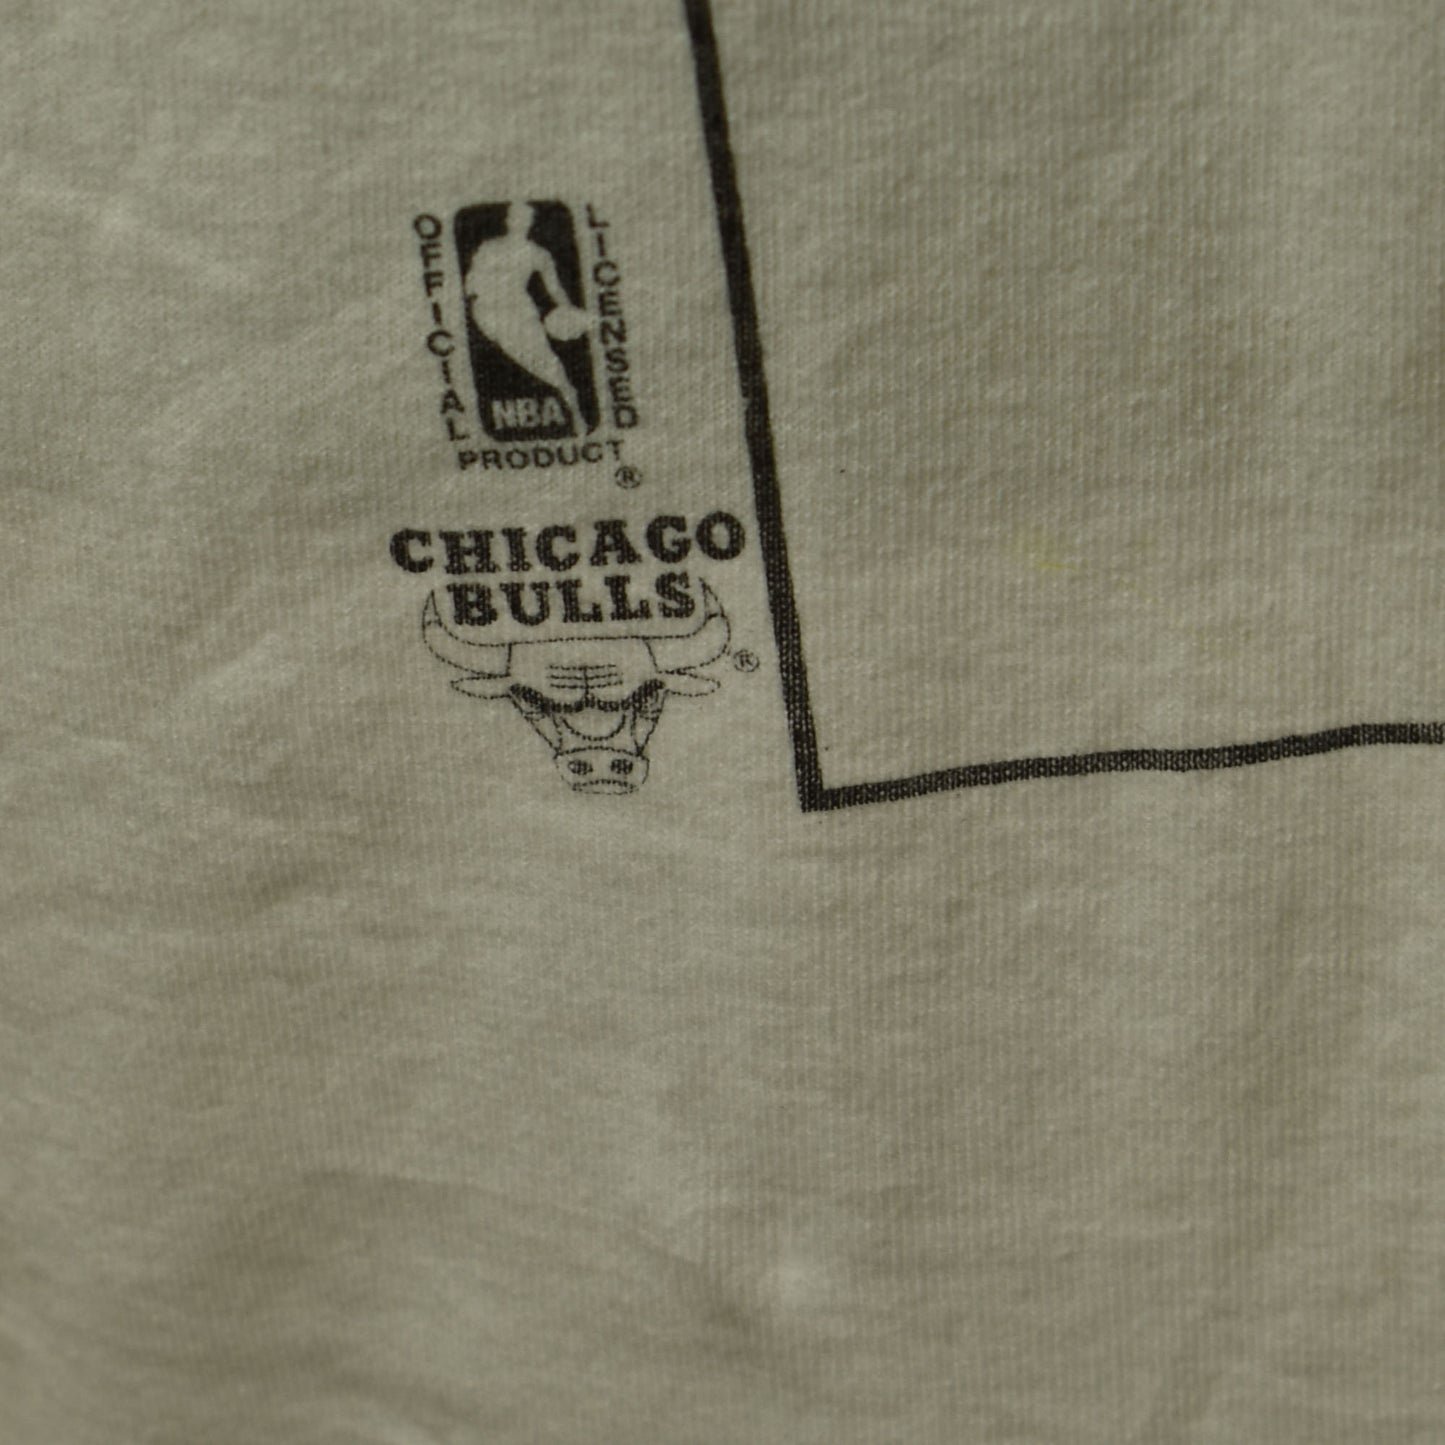 Vintage 1995 Michael Jordan Relaunched Un-retirement T-shirt - Single Stitch - Size L